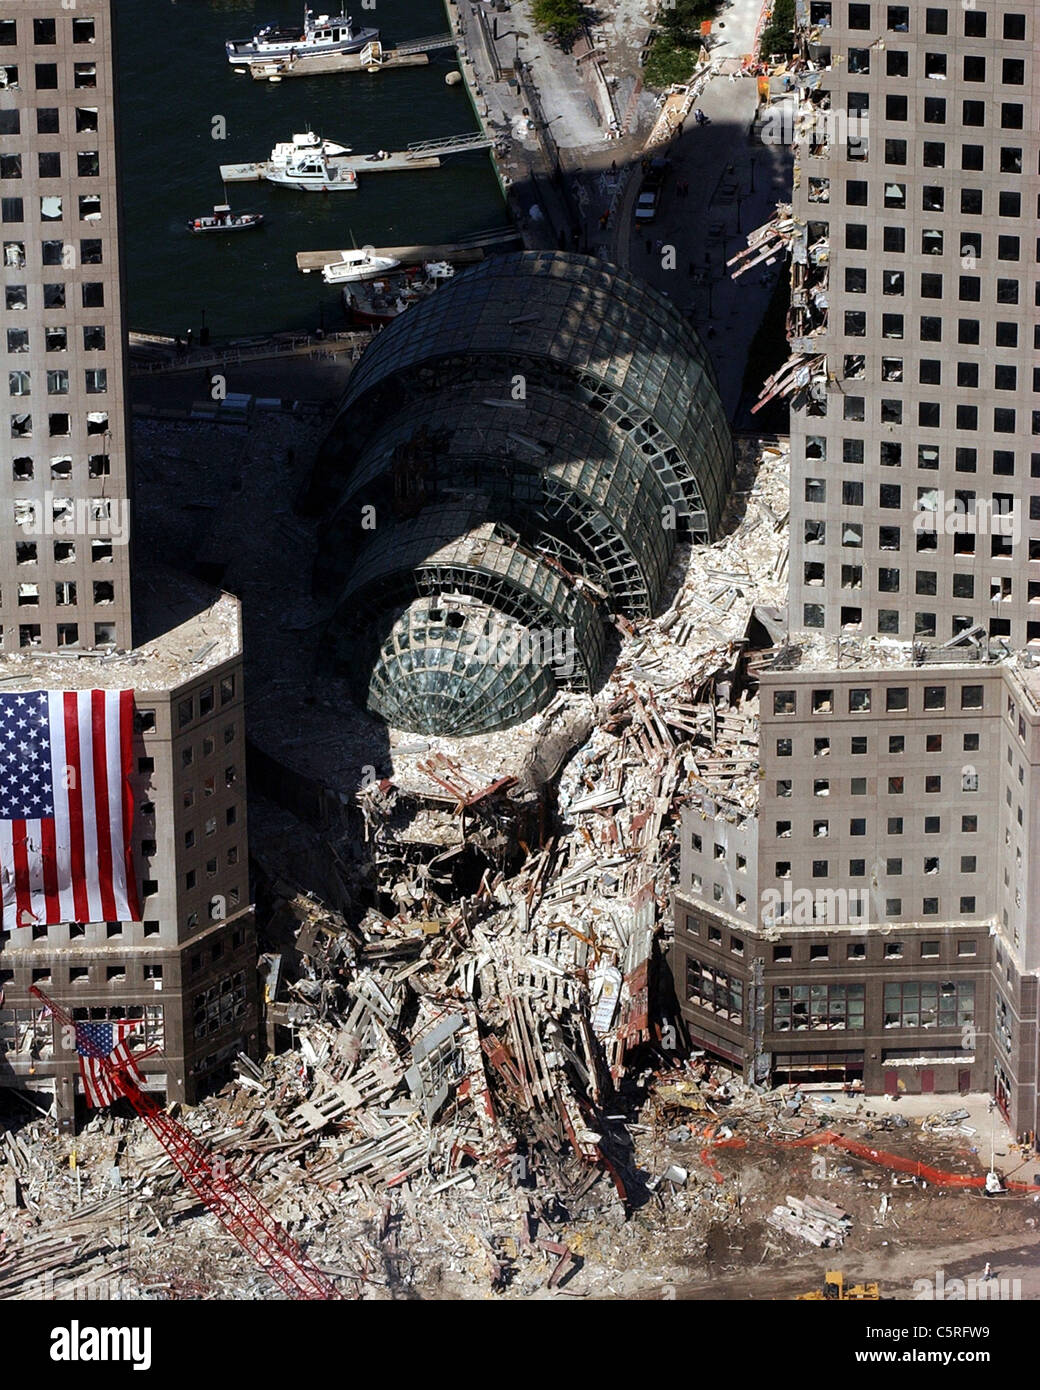 Vue aérienne de ruines fumantes de ground zero, le World Trade Center après le 911 attaques terroristes Banque D'Images